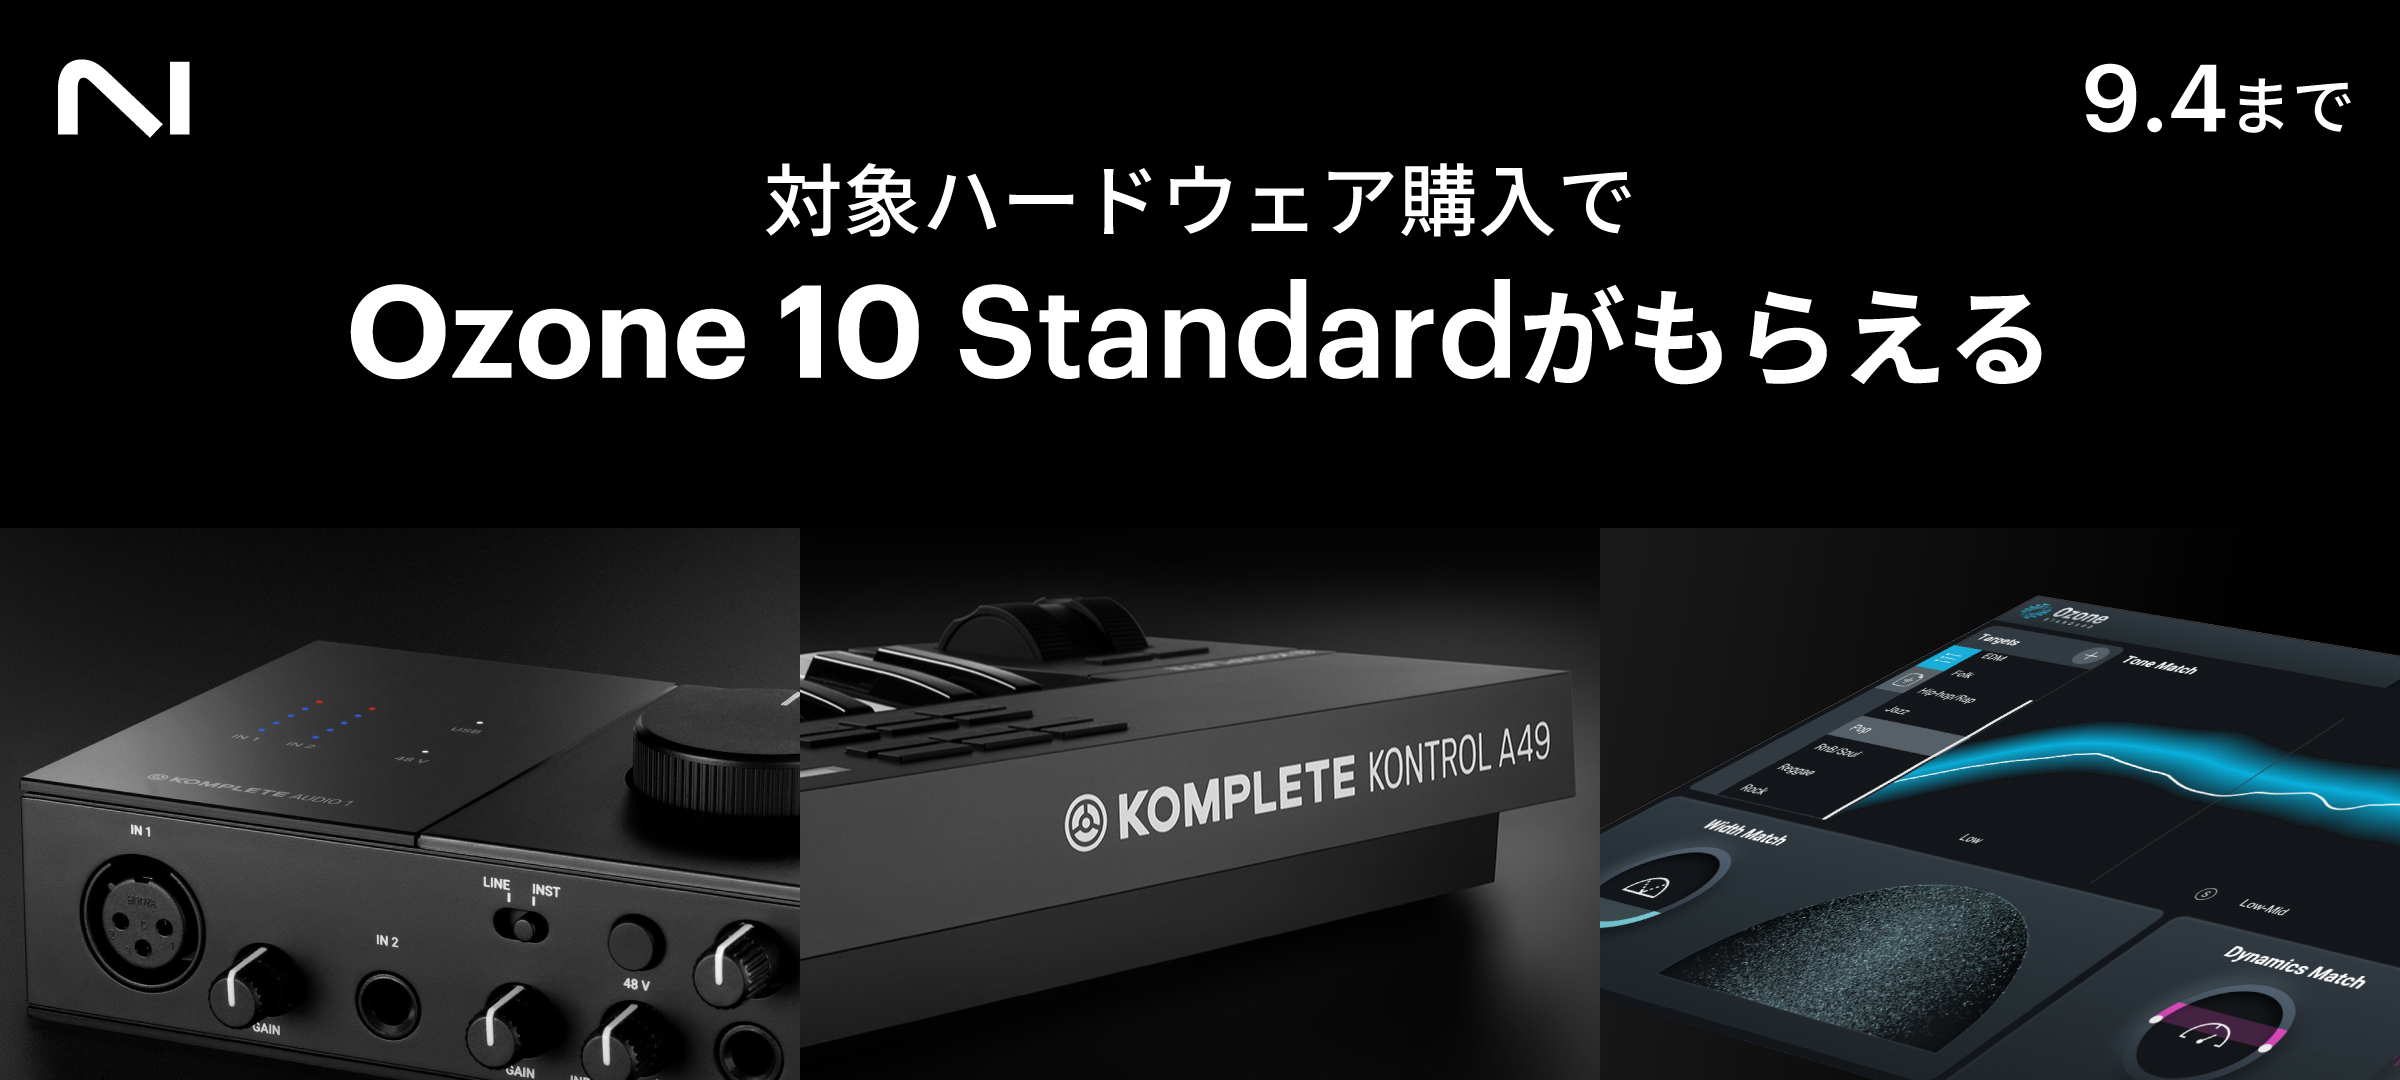 対象NIハードウェア購入でOzone 10 Standardがもらえる - iZotope Japan